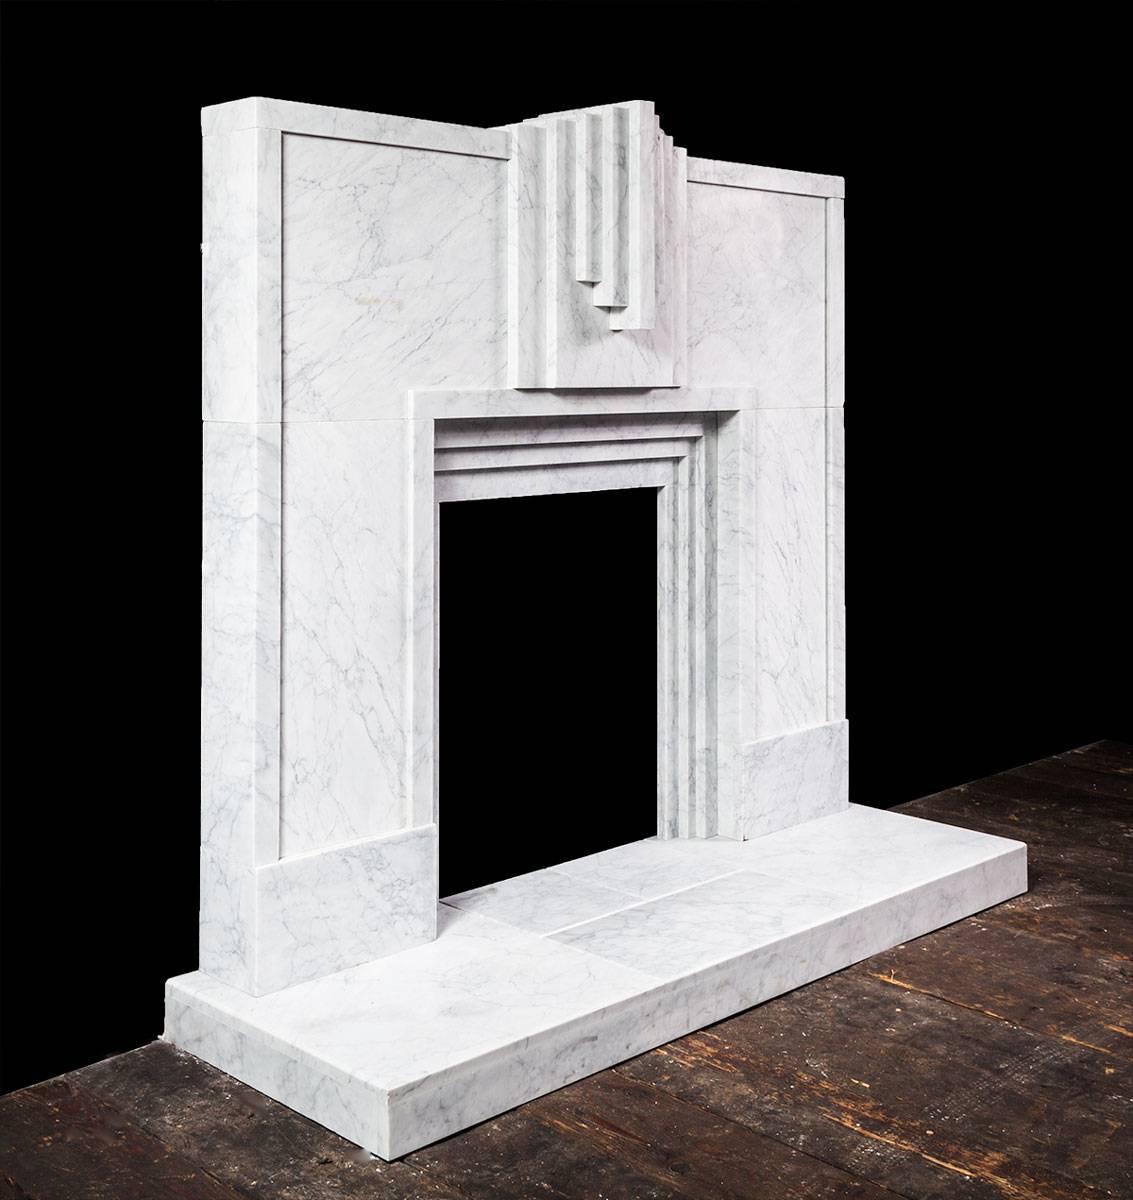 Der Kamin ist aus wunderschön geädertem italienischem Carrara-Marmor gefertigt und weist starke, klare und kühne geometrische Linien auf, die typisch für den Art-déco-Stil der 1920er Jahre sind.
   